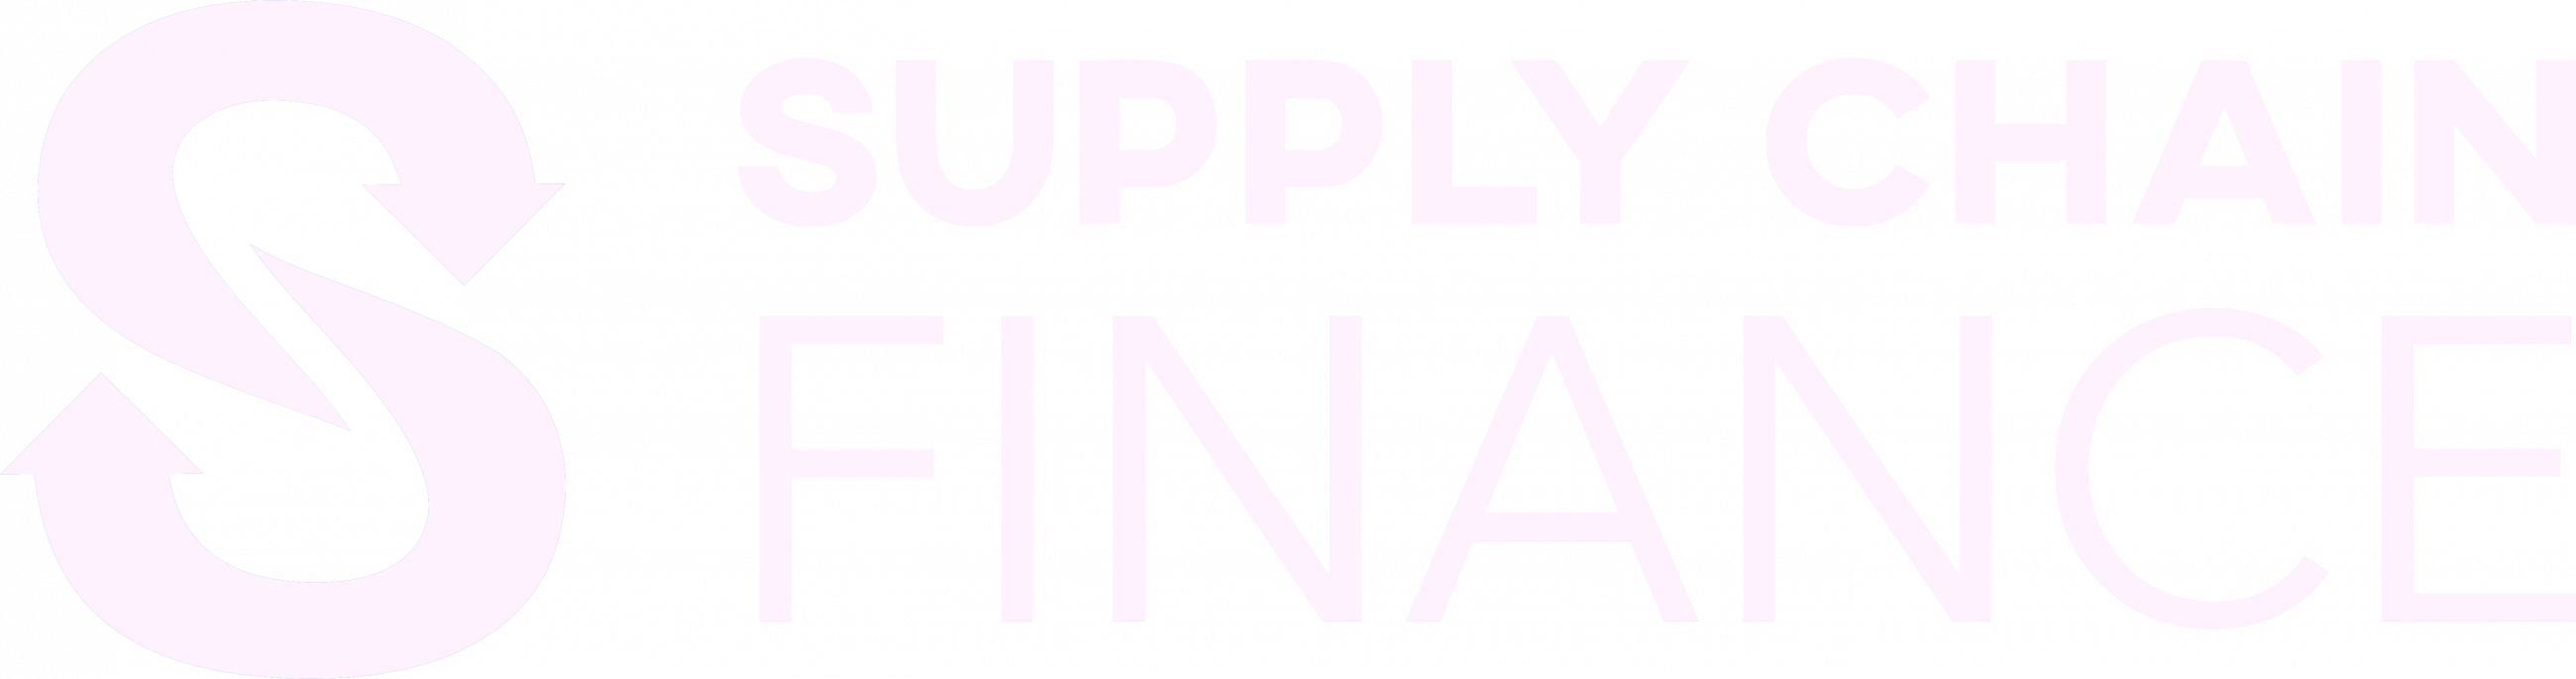 Supply chain finance